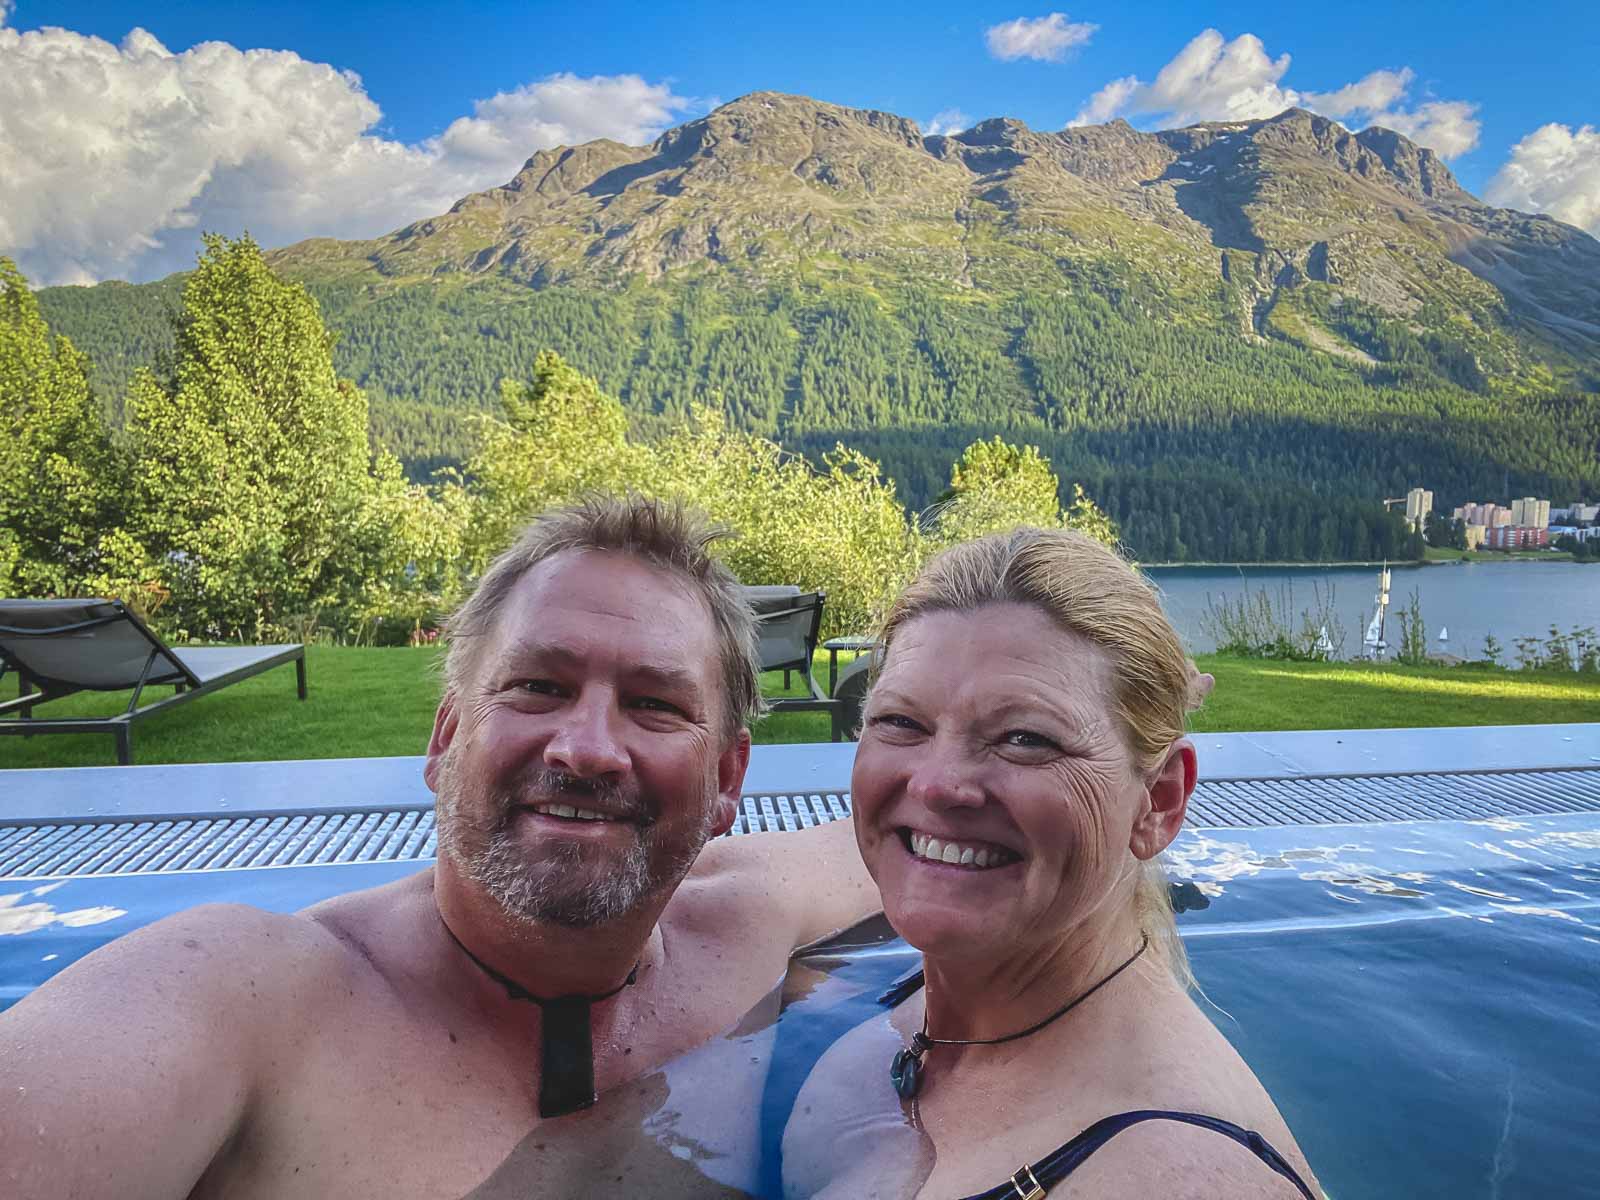 Enjoying Infinity pool at Hotel Kulm in St Moritz